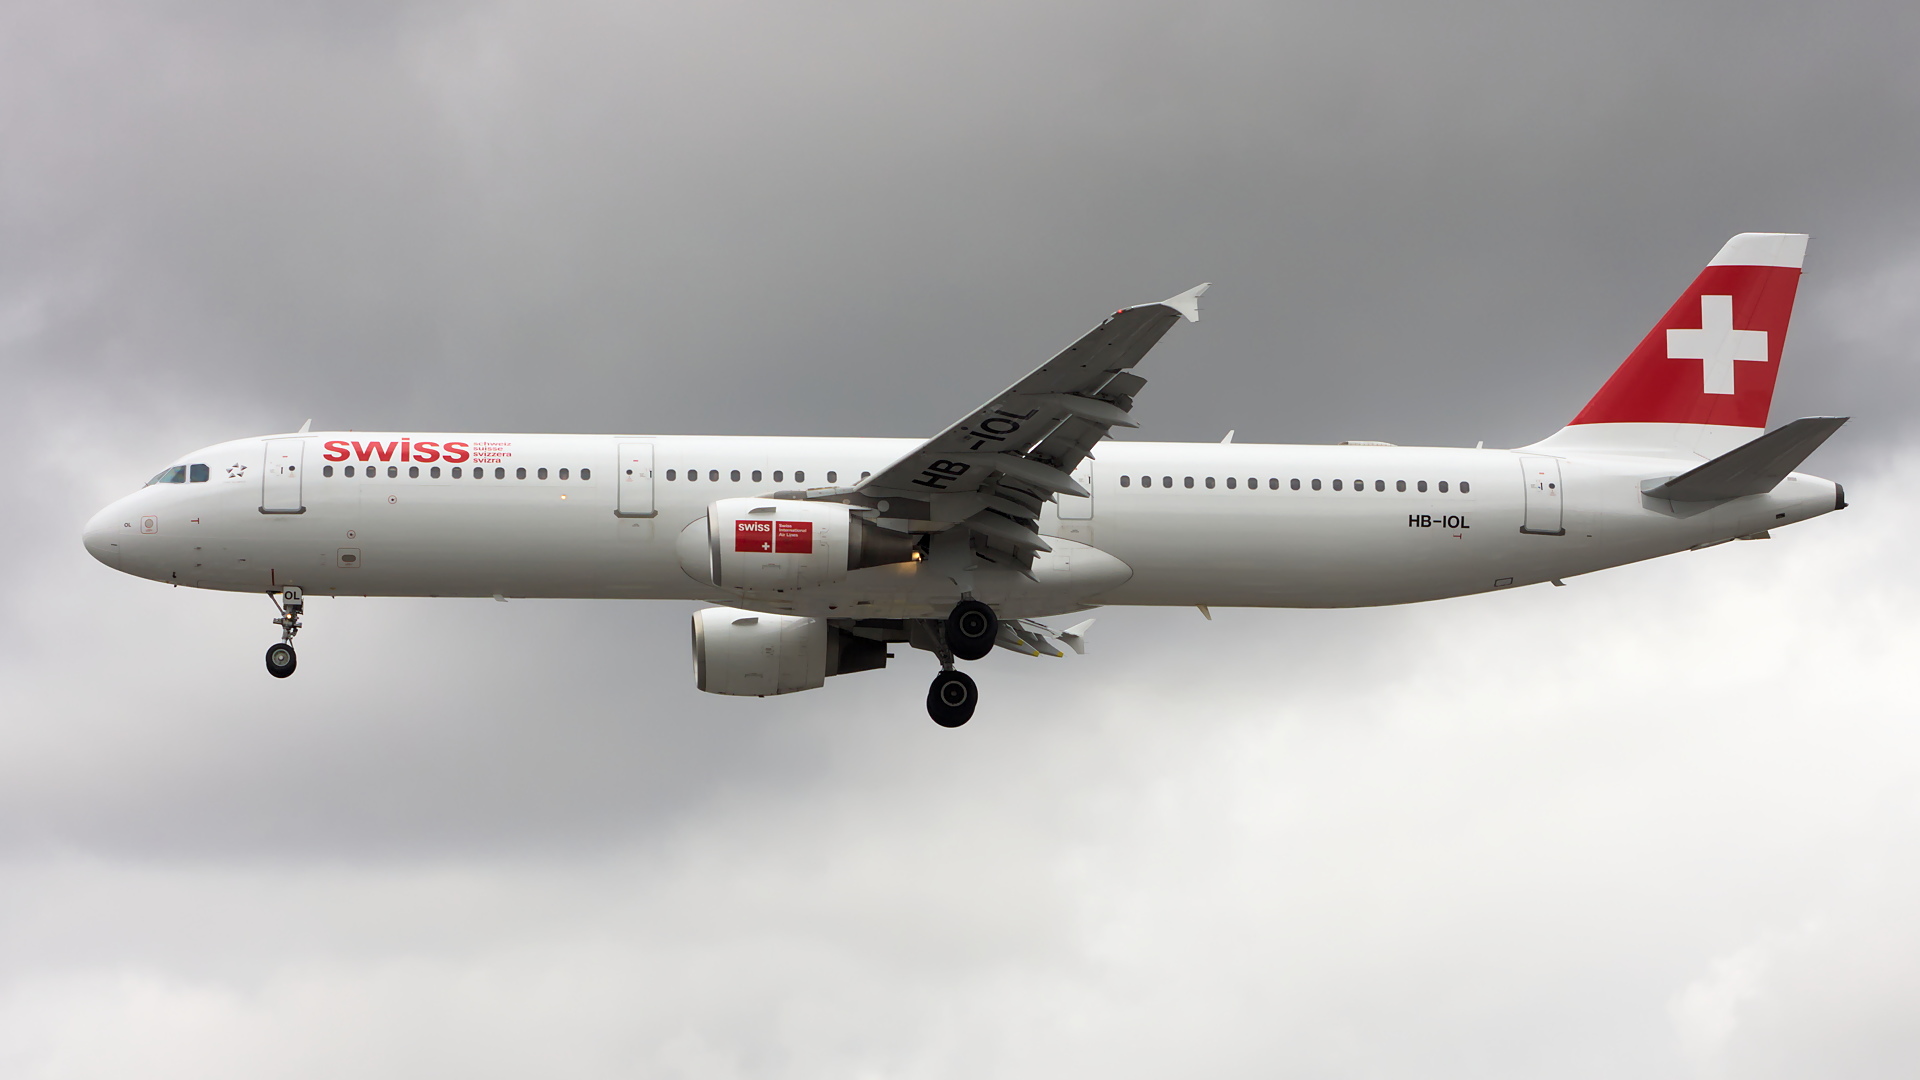 HB-IOL ✈ Swiss International Air Lines Airbus A321-111 @ London-Heathrow